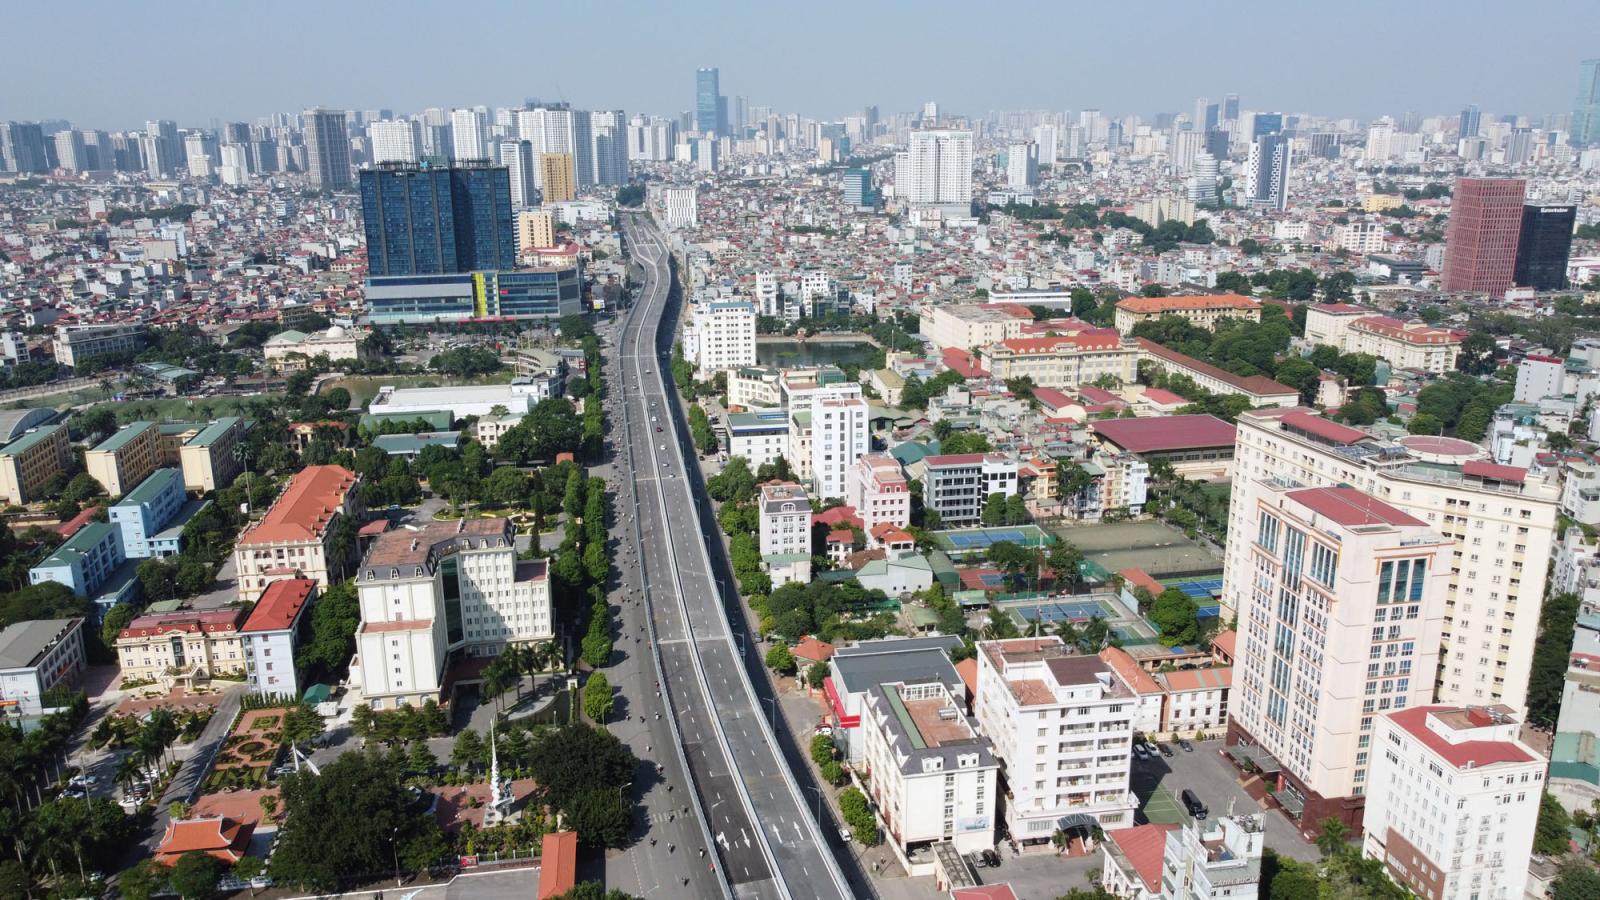 Hình ảnh một góc thành phố nhìn từ trên cao với nhiều chung cư cao tầng xen kẽ khu dân cư thấp tầng